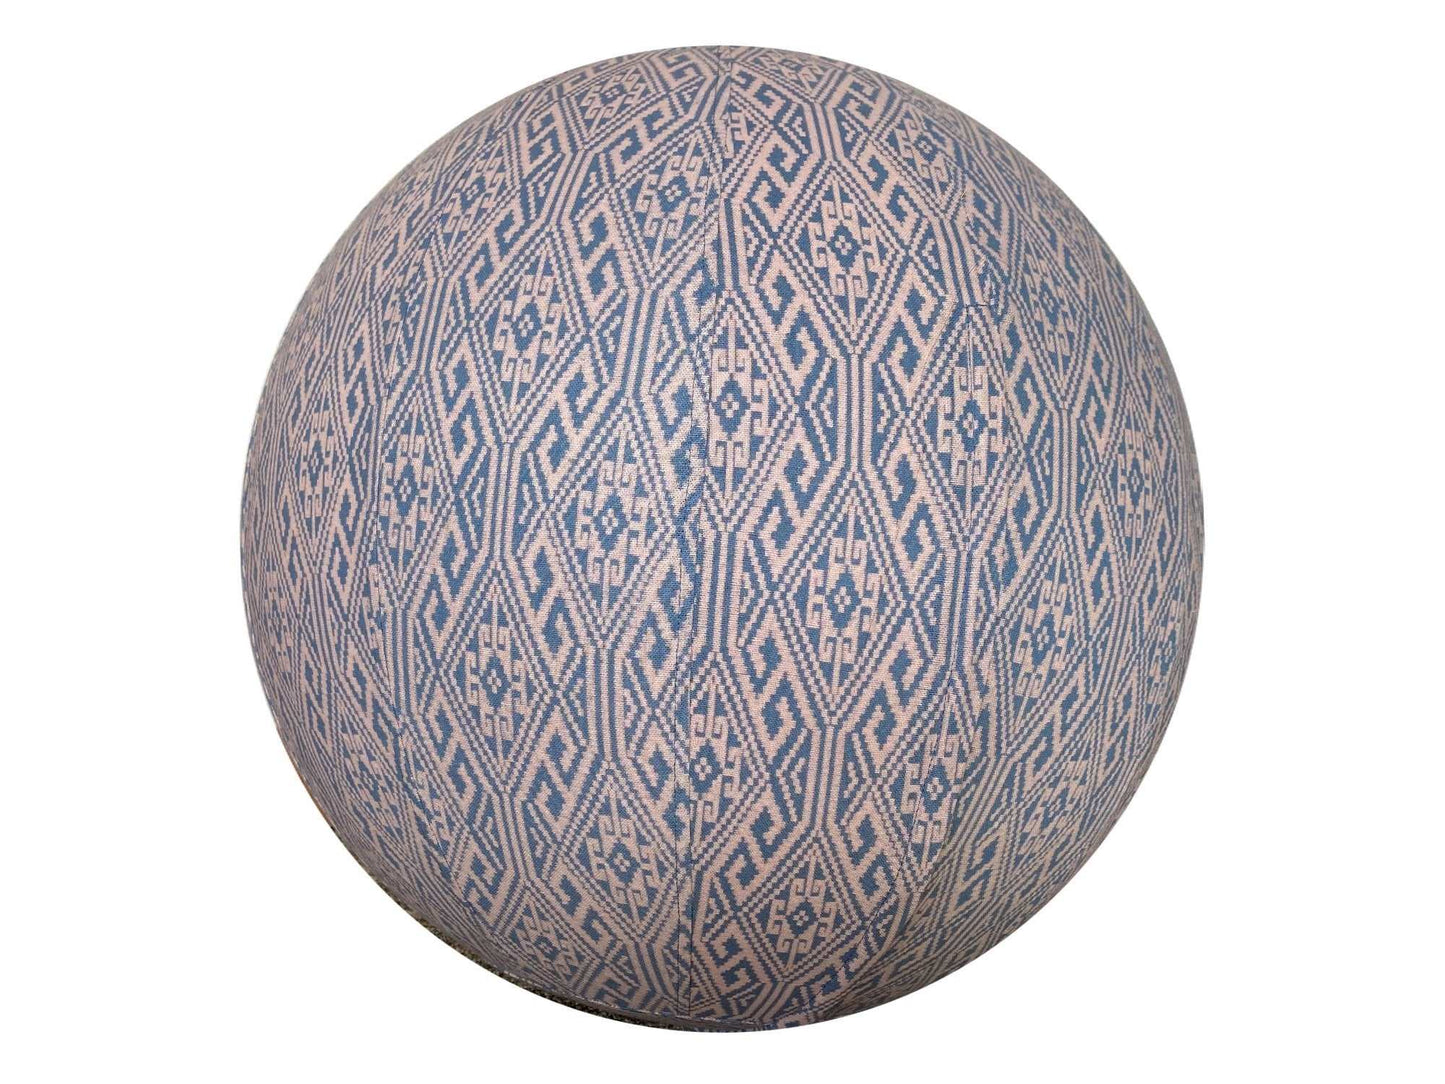 75cm Balance Ball / Yoga Ball Cover: Aztec Grey Fade